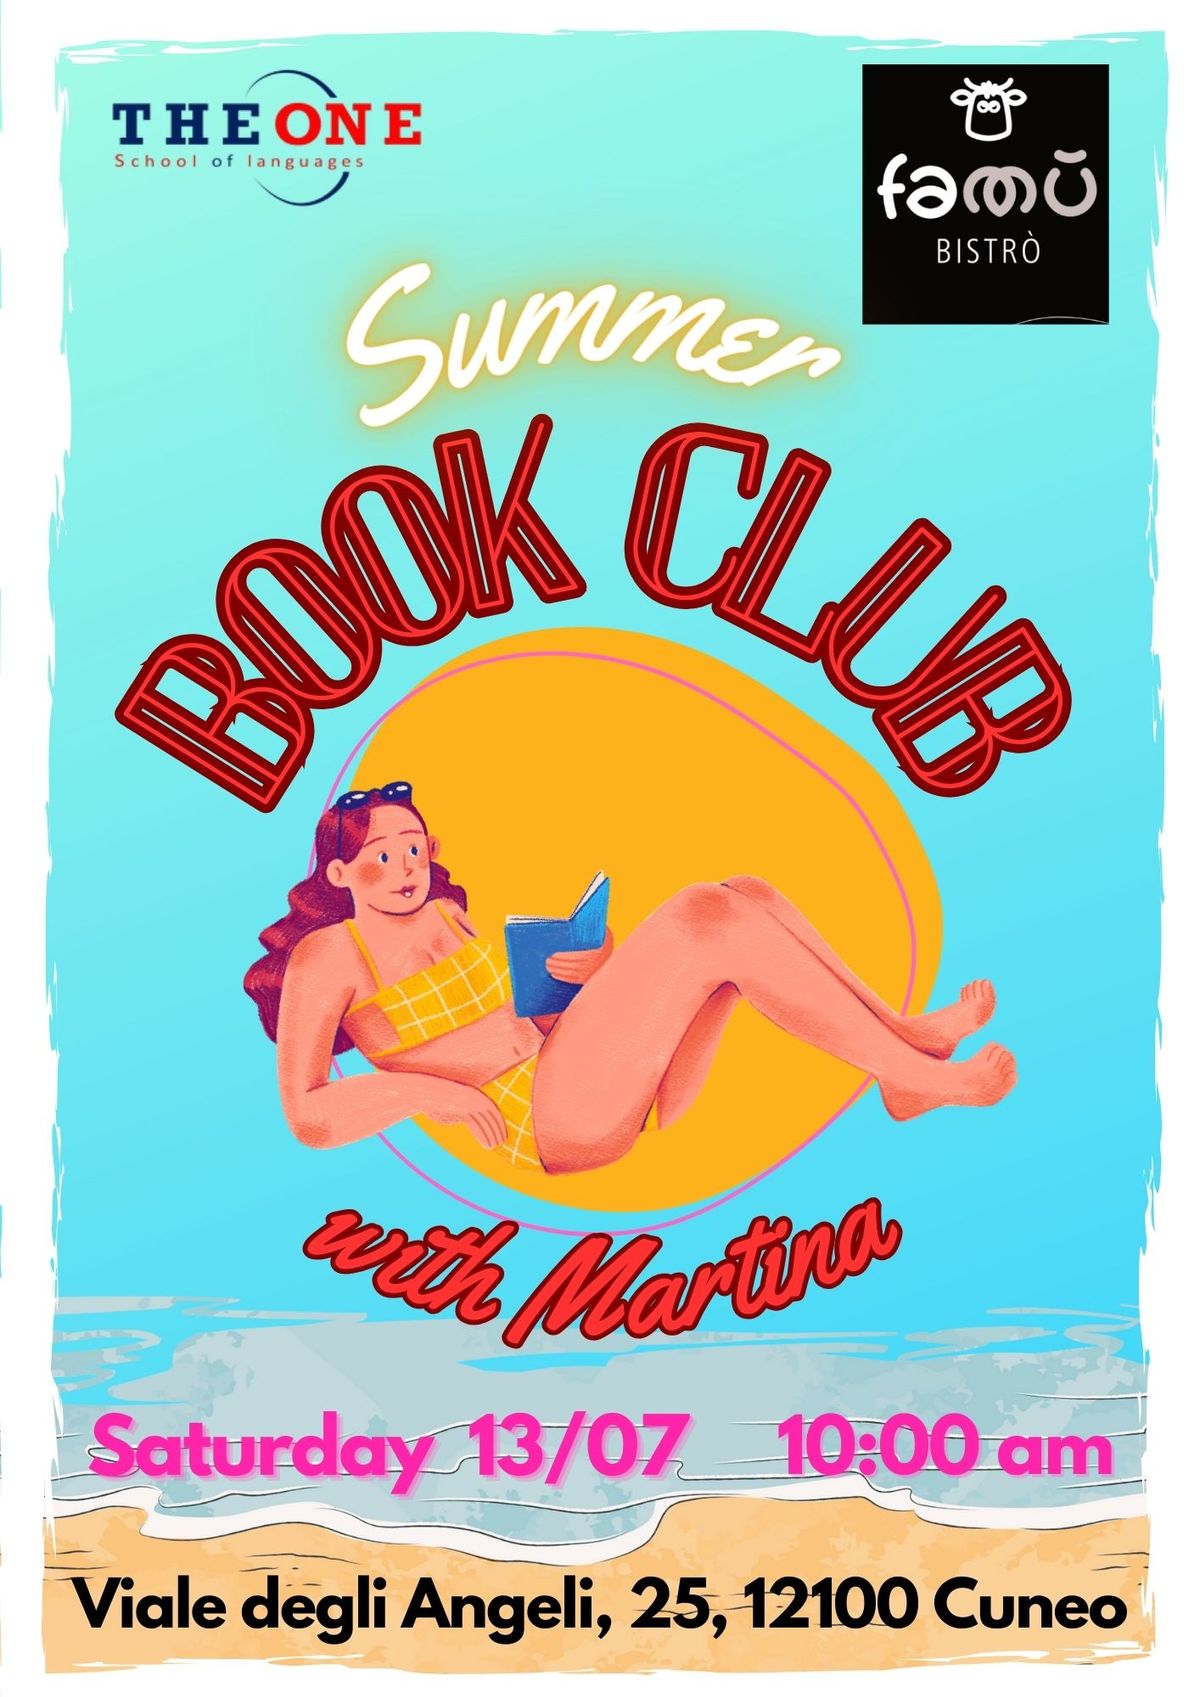 SUMMER - BOOK CLUB